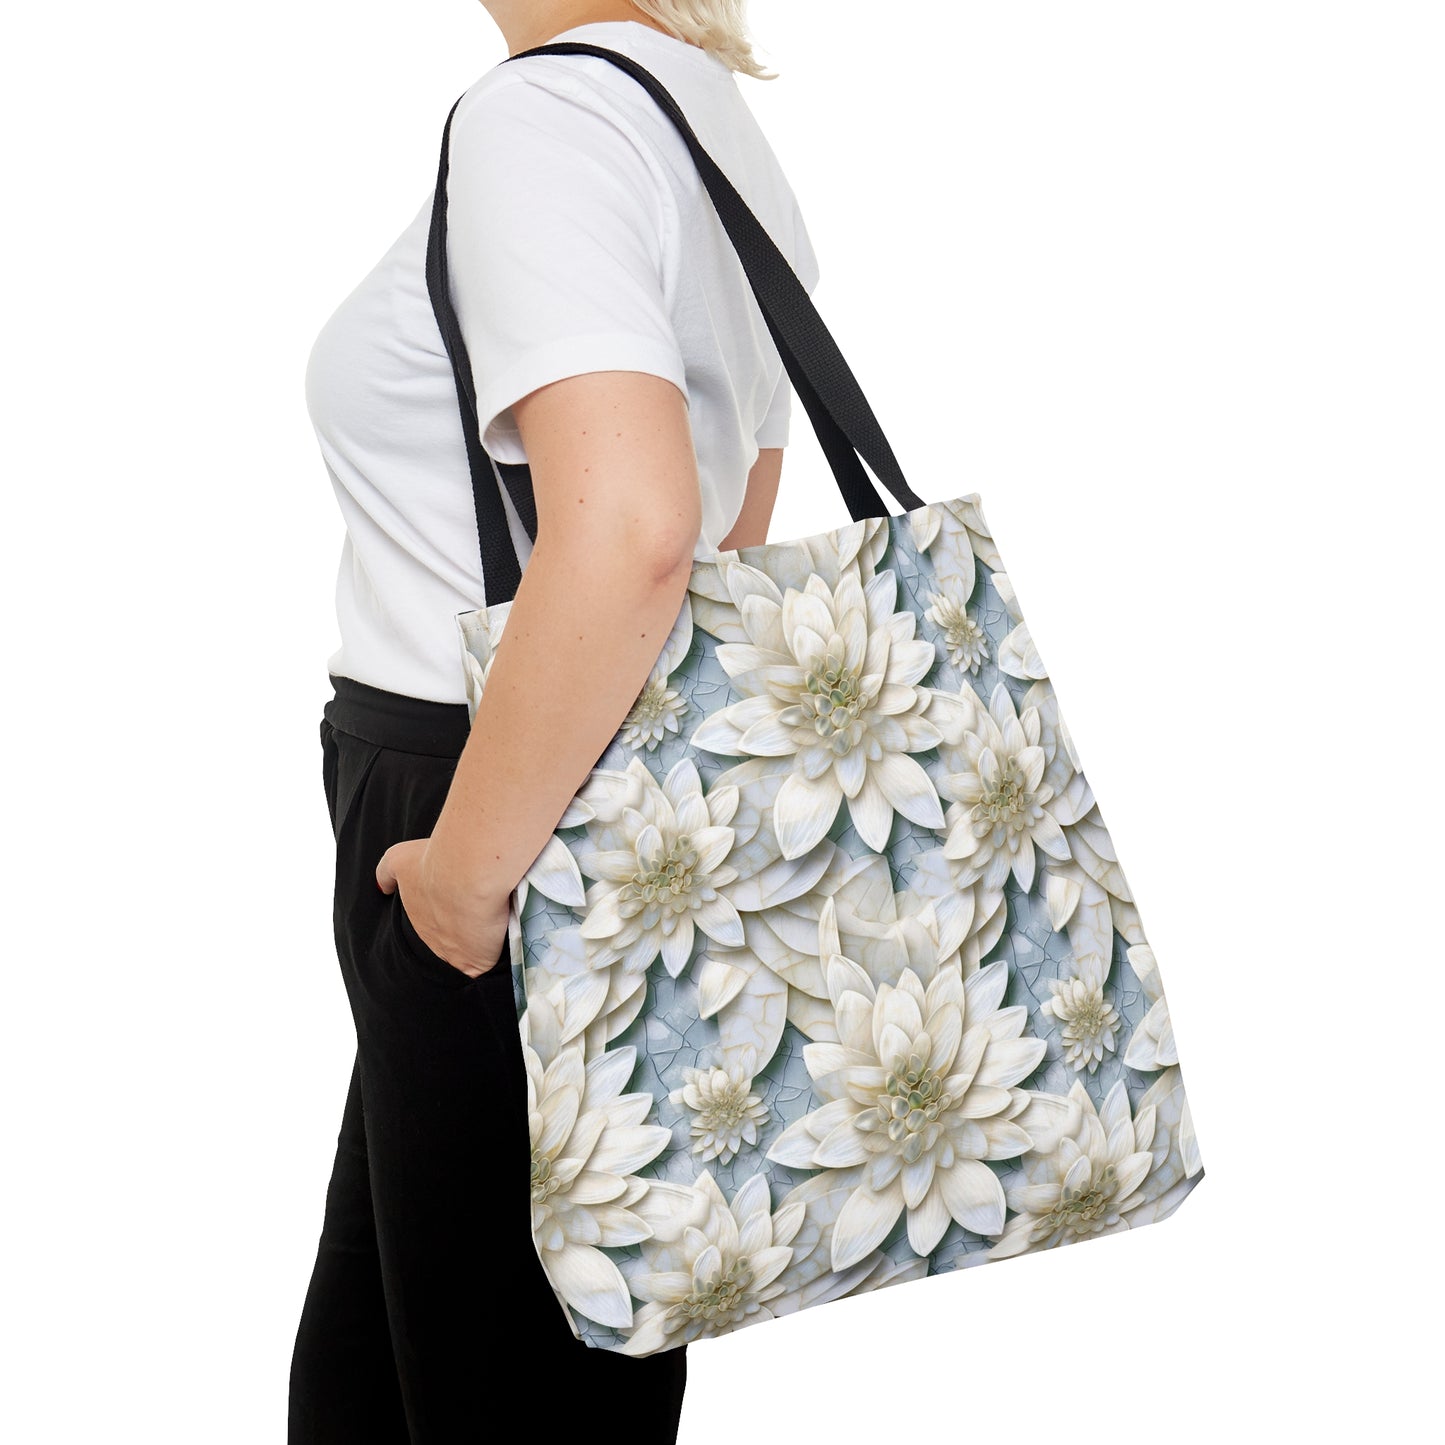 Beautiful and Unique - White Lotus Mosaic 7 - Useful, Multipurpose Bag -Tote Bag (AOP)